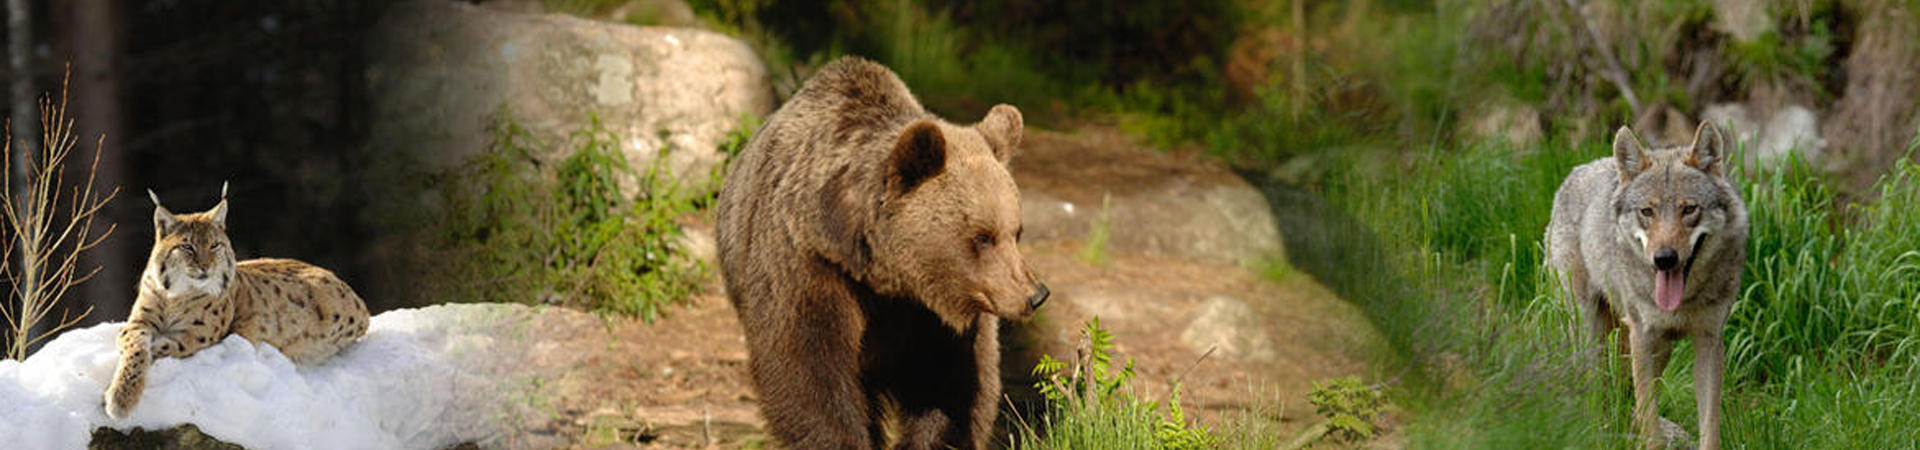 Spray anti orso, informazioni sbagliate e pericolose / Notizia